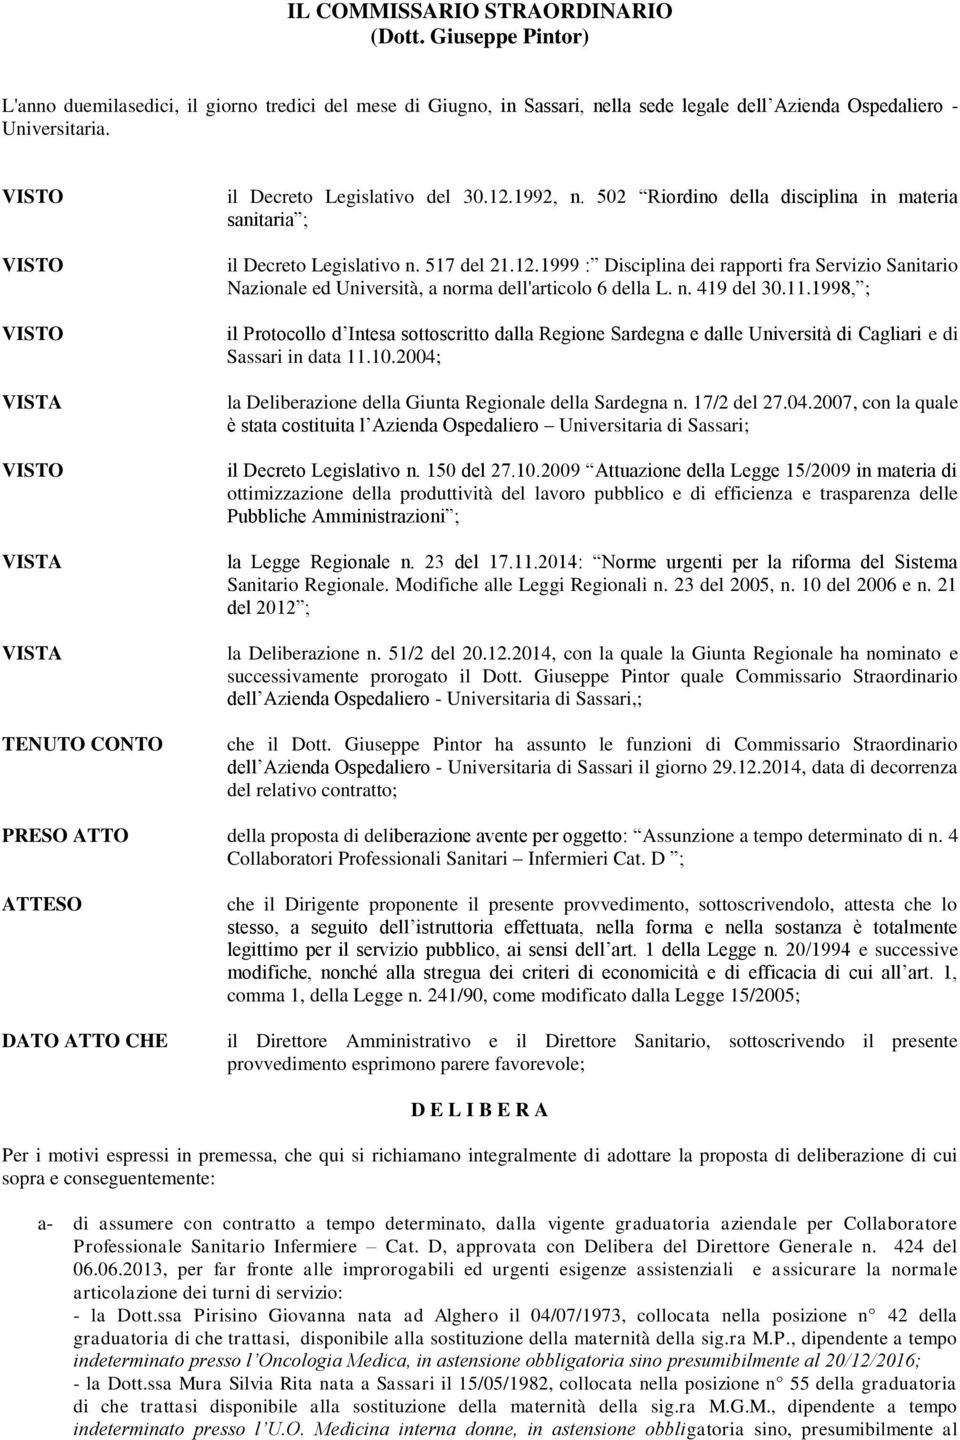 n. 419 del 30.11.1998, ; il Protocollo d Intesa sottoscritto dalla Regione Sardegna e dalle Università di Cagliari e di Sassari in data 11.10.